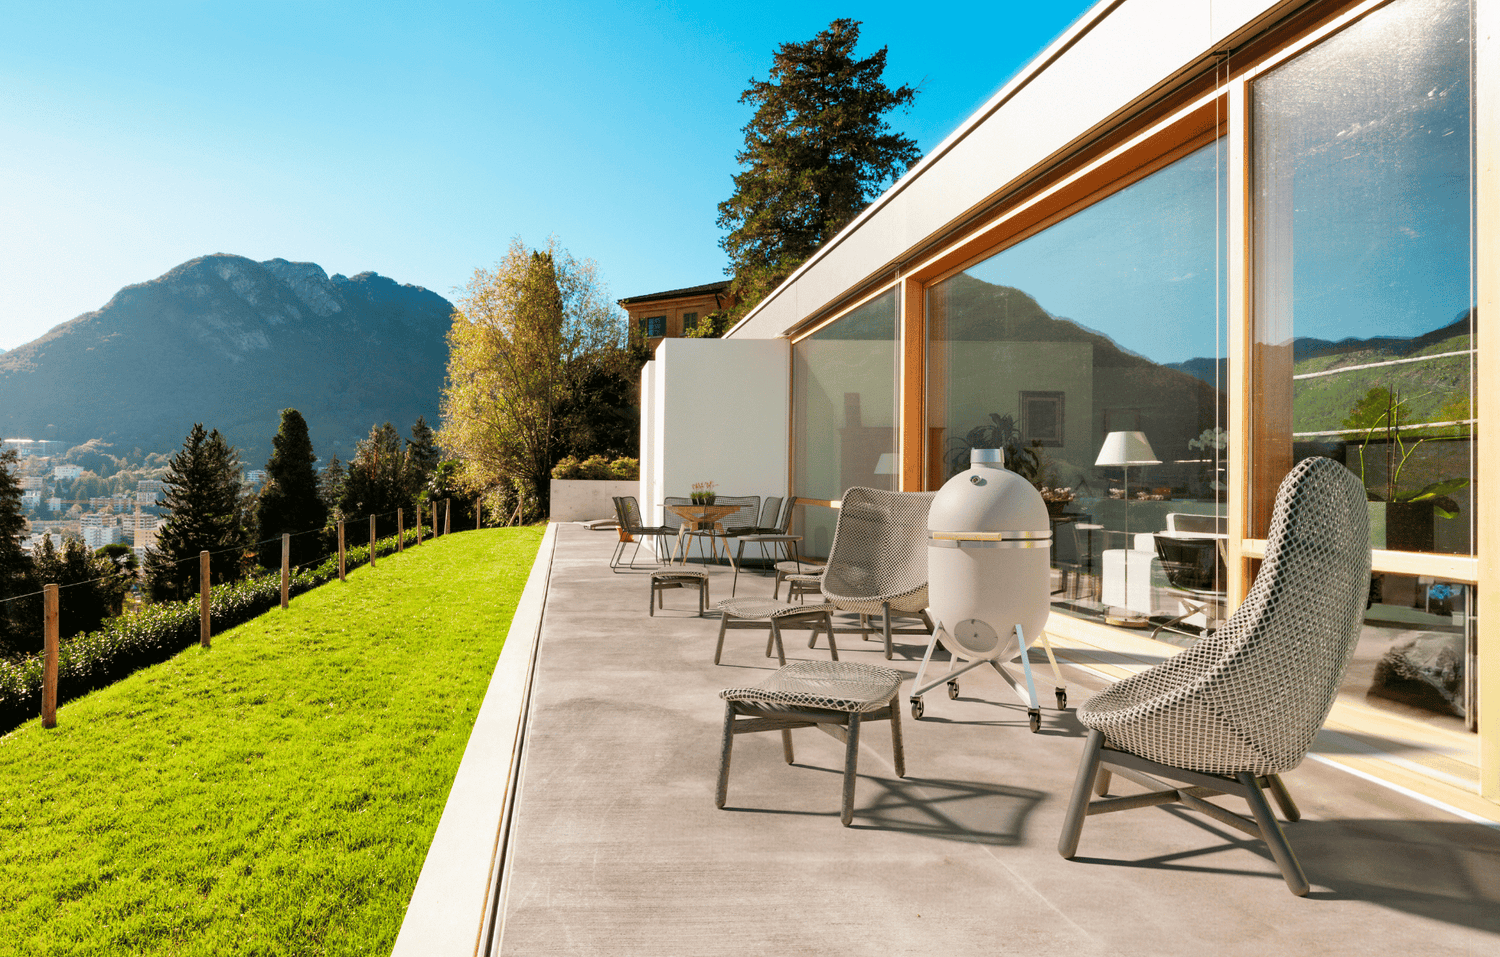 Compadre Grillofen auf Terrasse moderne Architektur Alpen